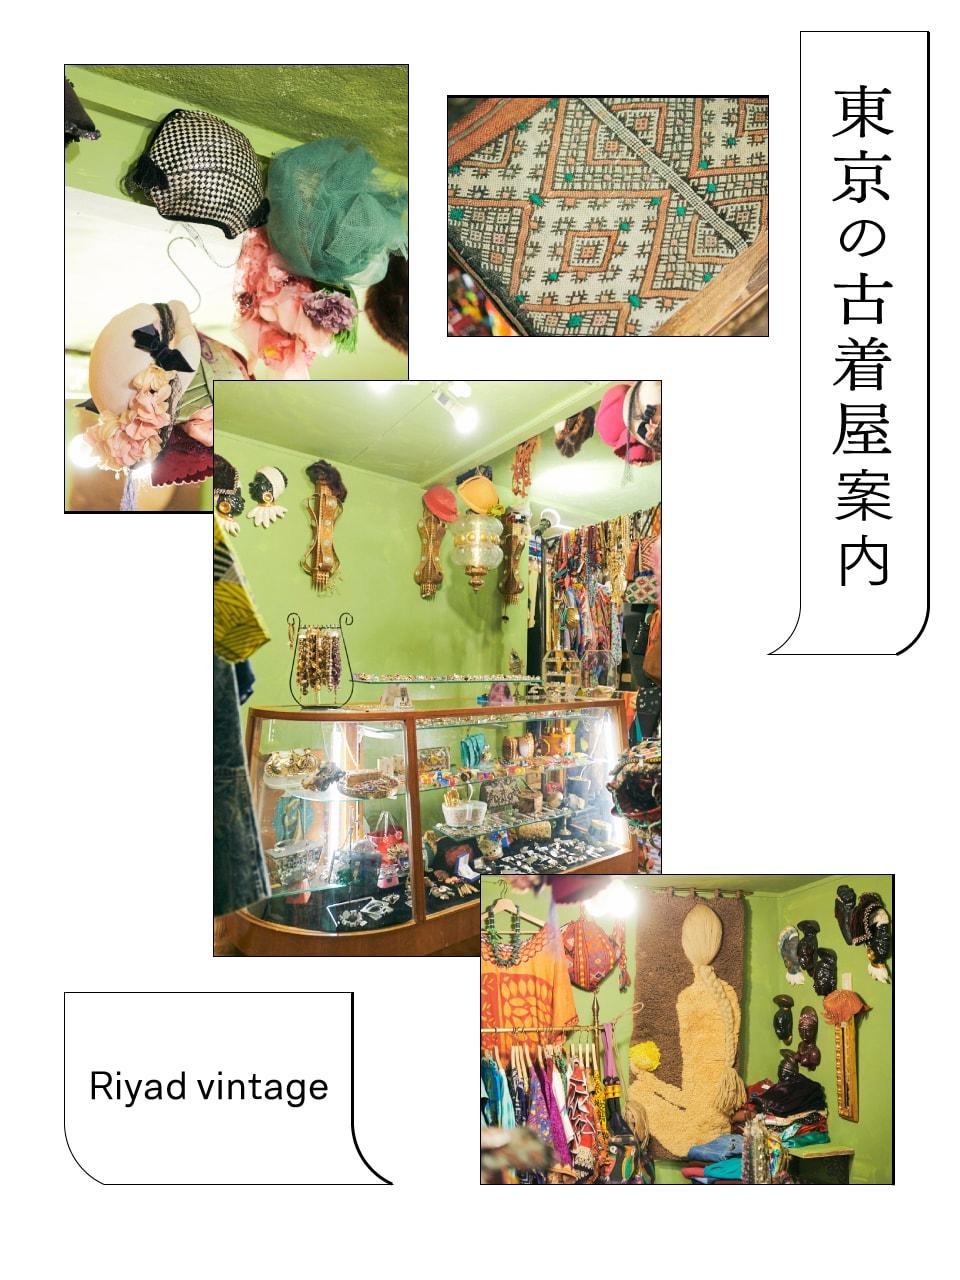 モロッコの砂漠で作られたラグと出合える「リヤド ヴィンテージ」。＋αが楽しい、東京の古着屋案内